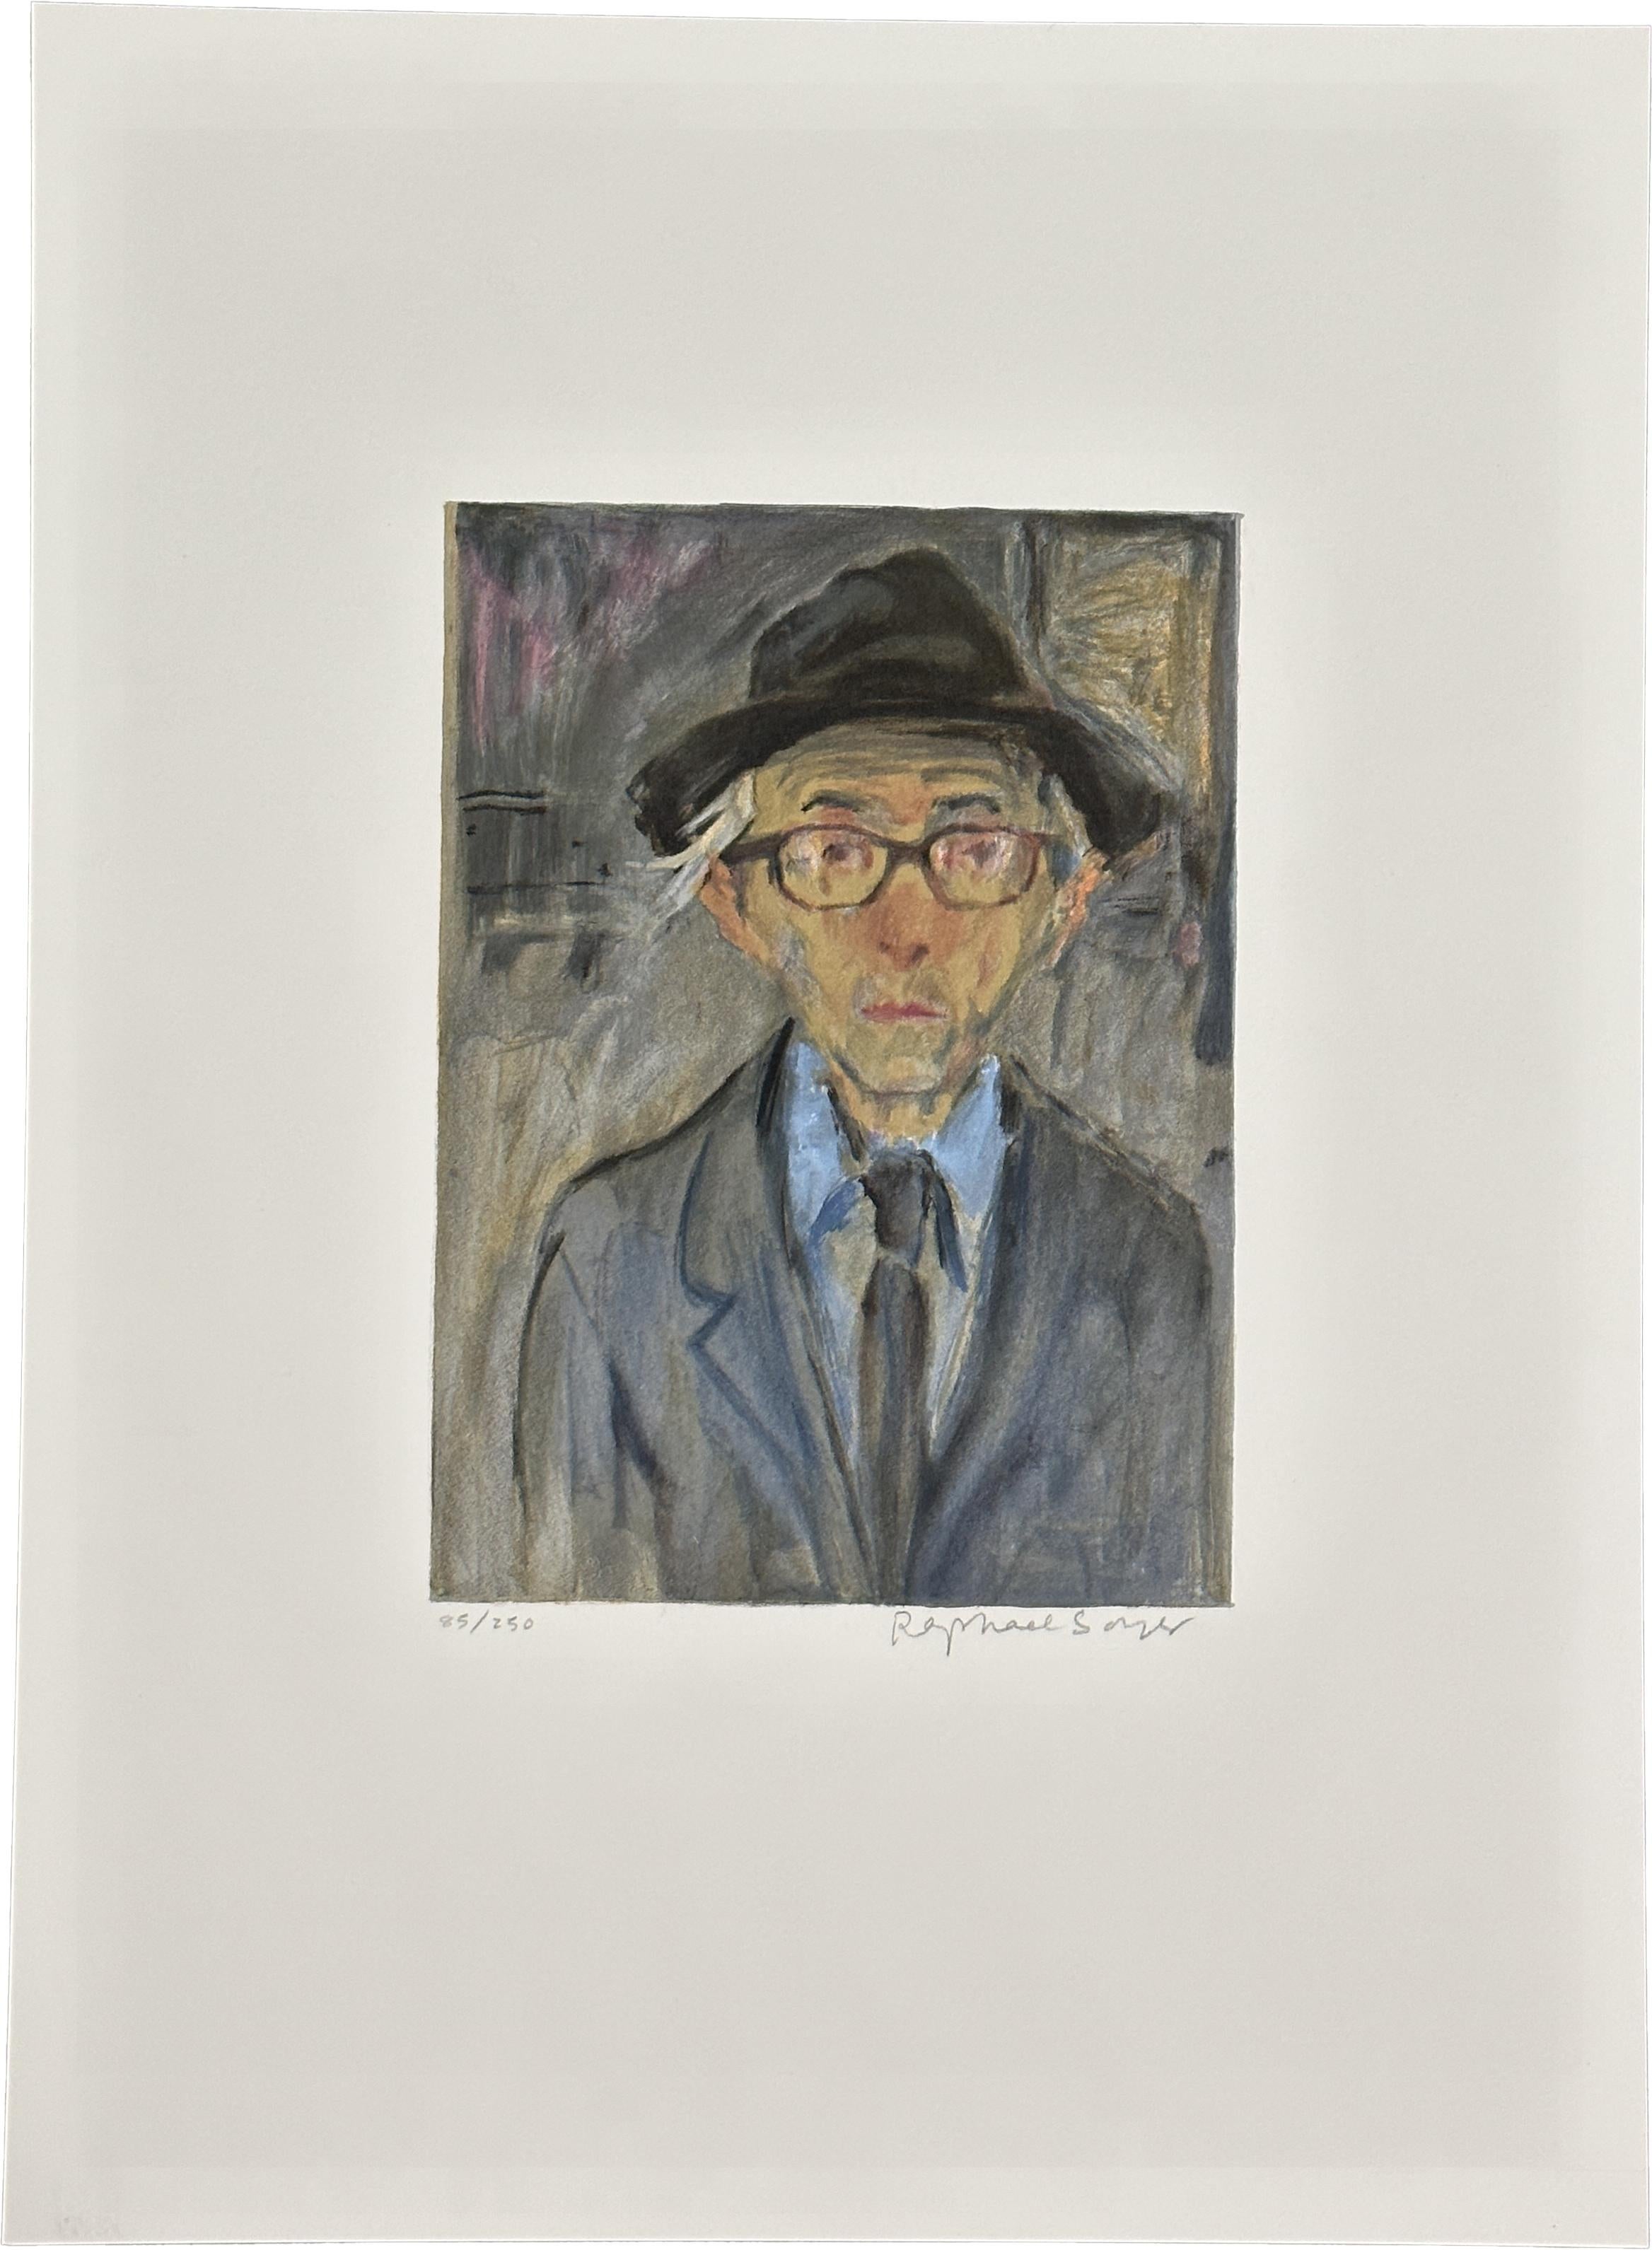 Portrait Print Raphael Soyer - Self Portrait 1979 signé, lithographie en édition limitée